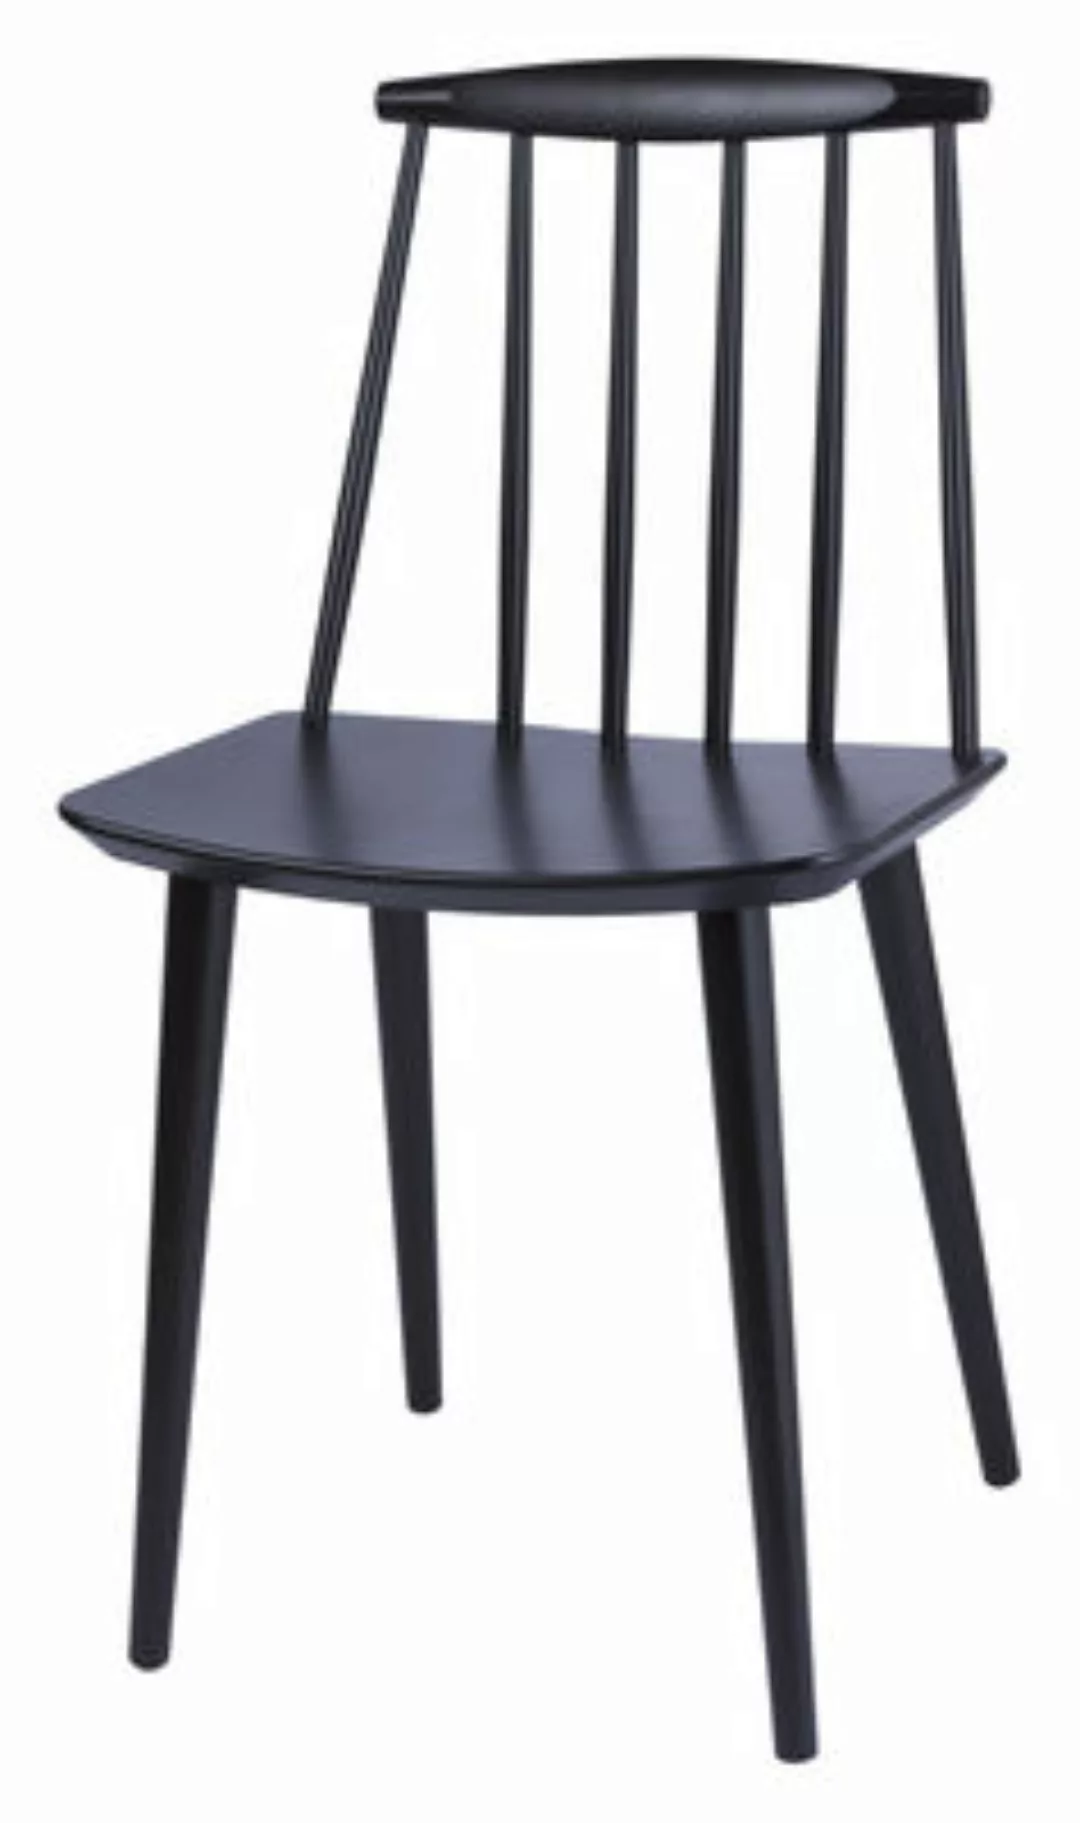 HAY - J77 Stuhl wasserbasiert lackiert - weiß/lackiert wasserbasiert/BxHxT günstig online kaufen